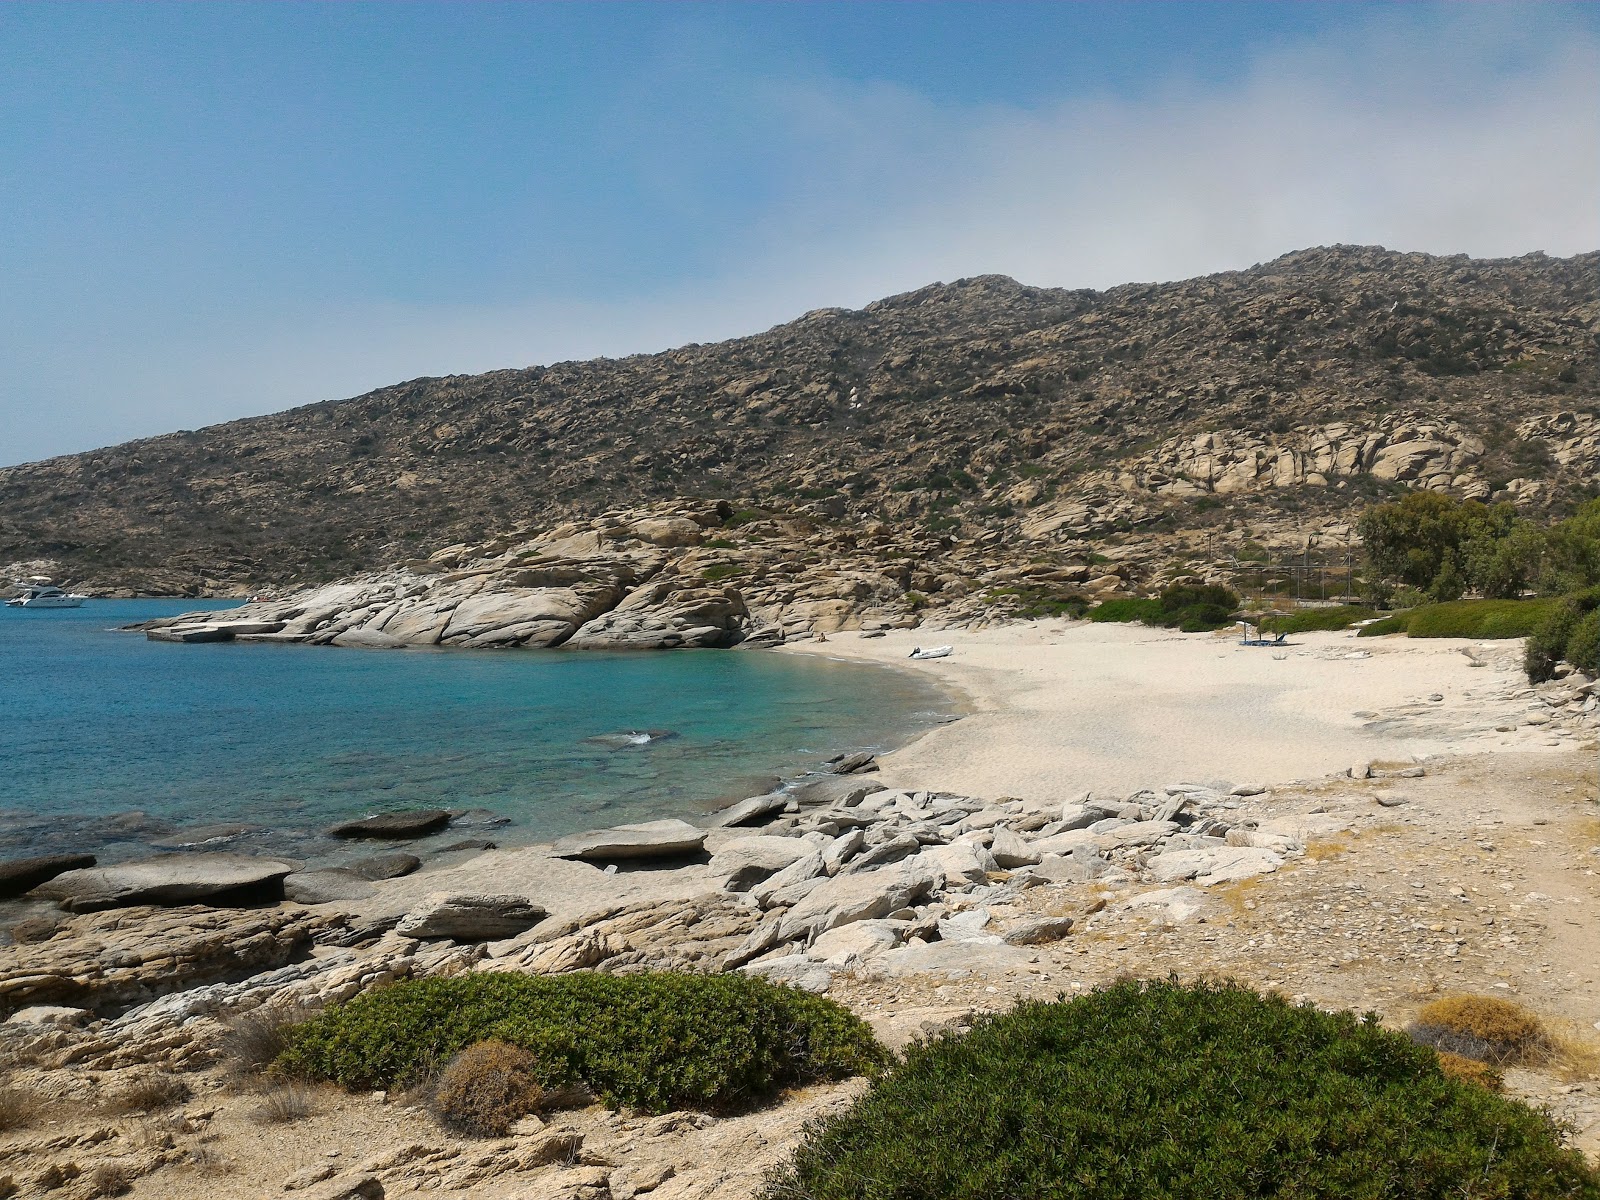 Santorini beach'in fotoğrafı parlak kum yüzey ile